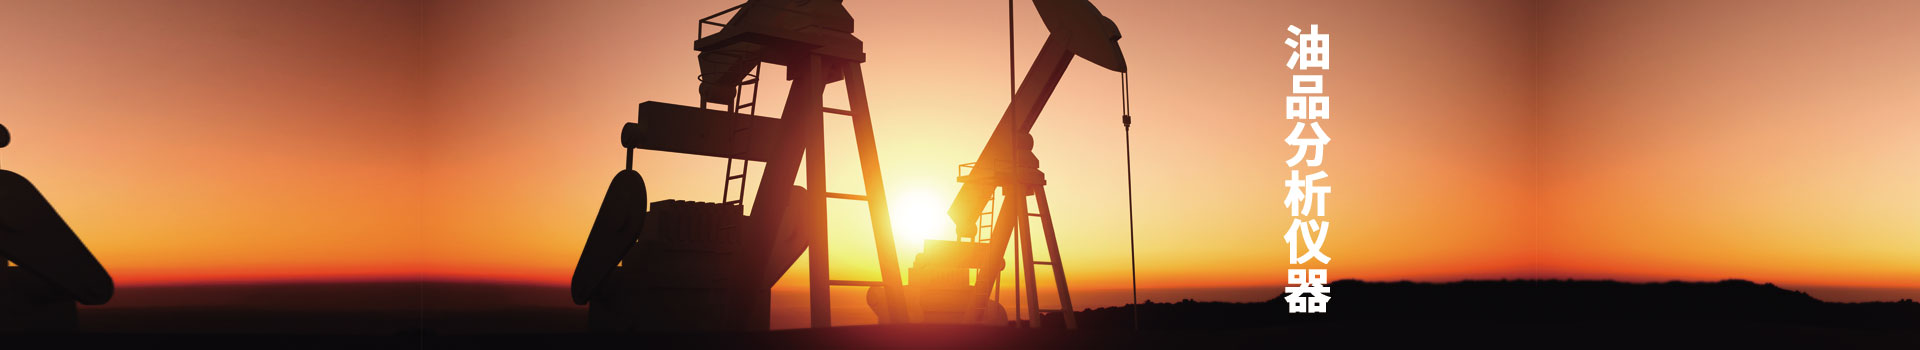 石油產品分析儀器